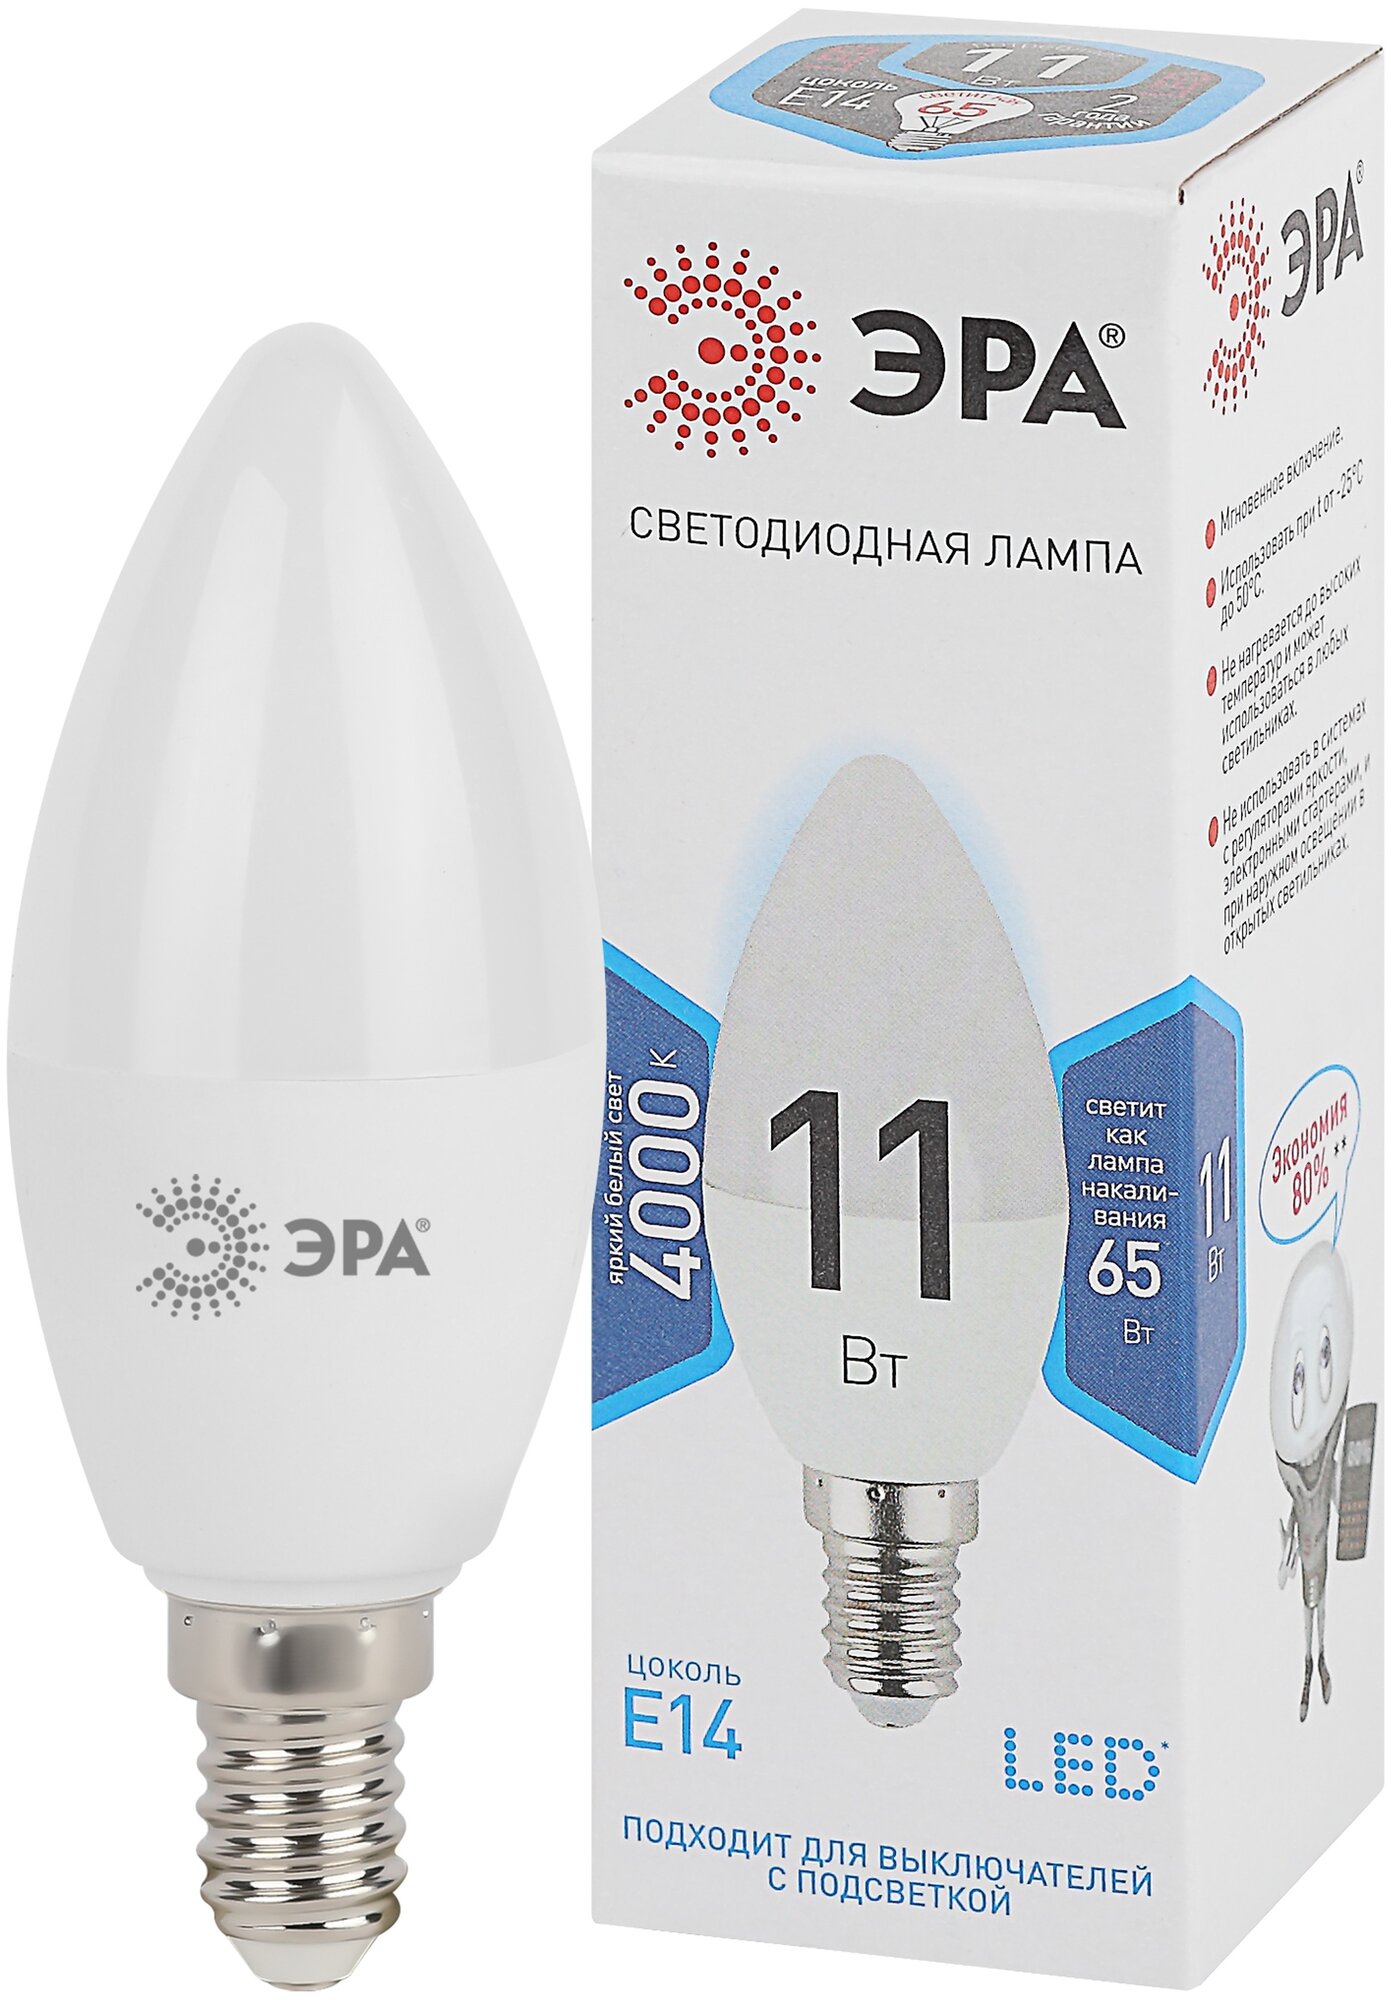 Лампа светодиодная ЭРА LED B35-11W-840-E14 (диод, свеча, 11Вт, нейтр, E14)